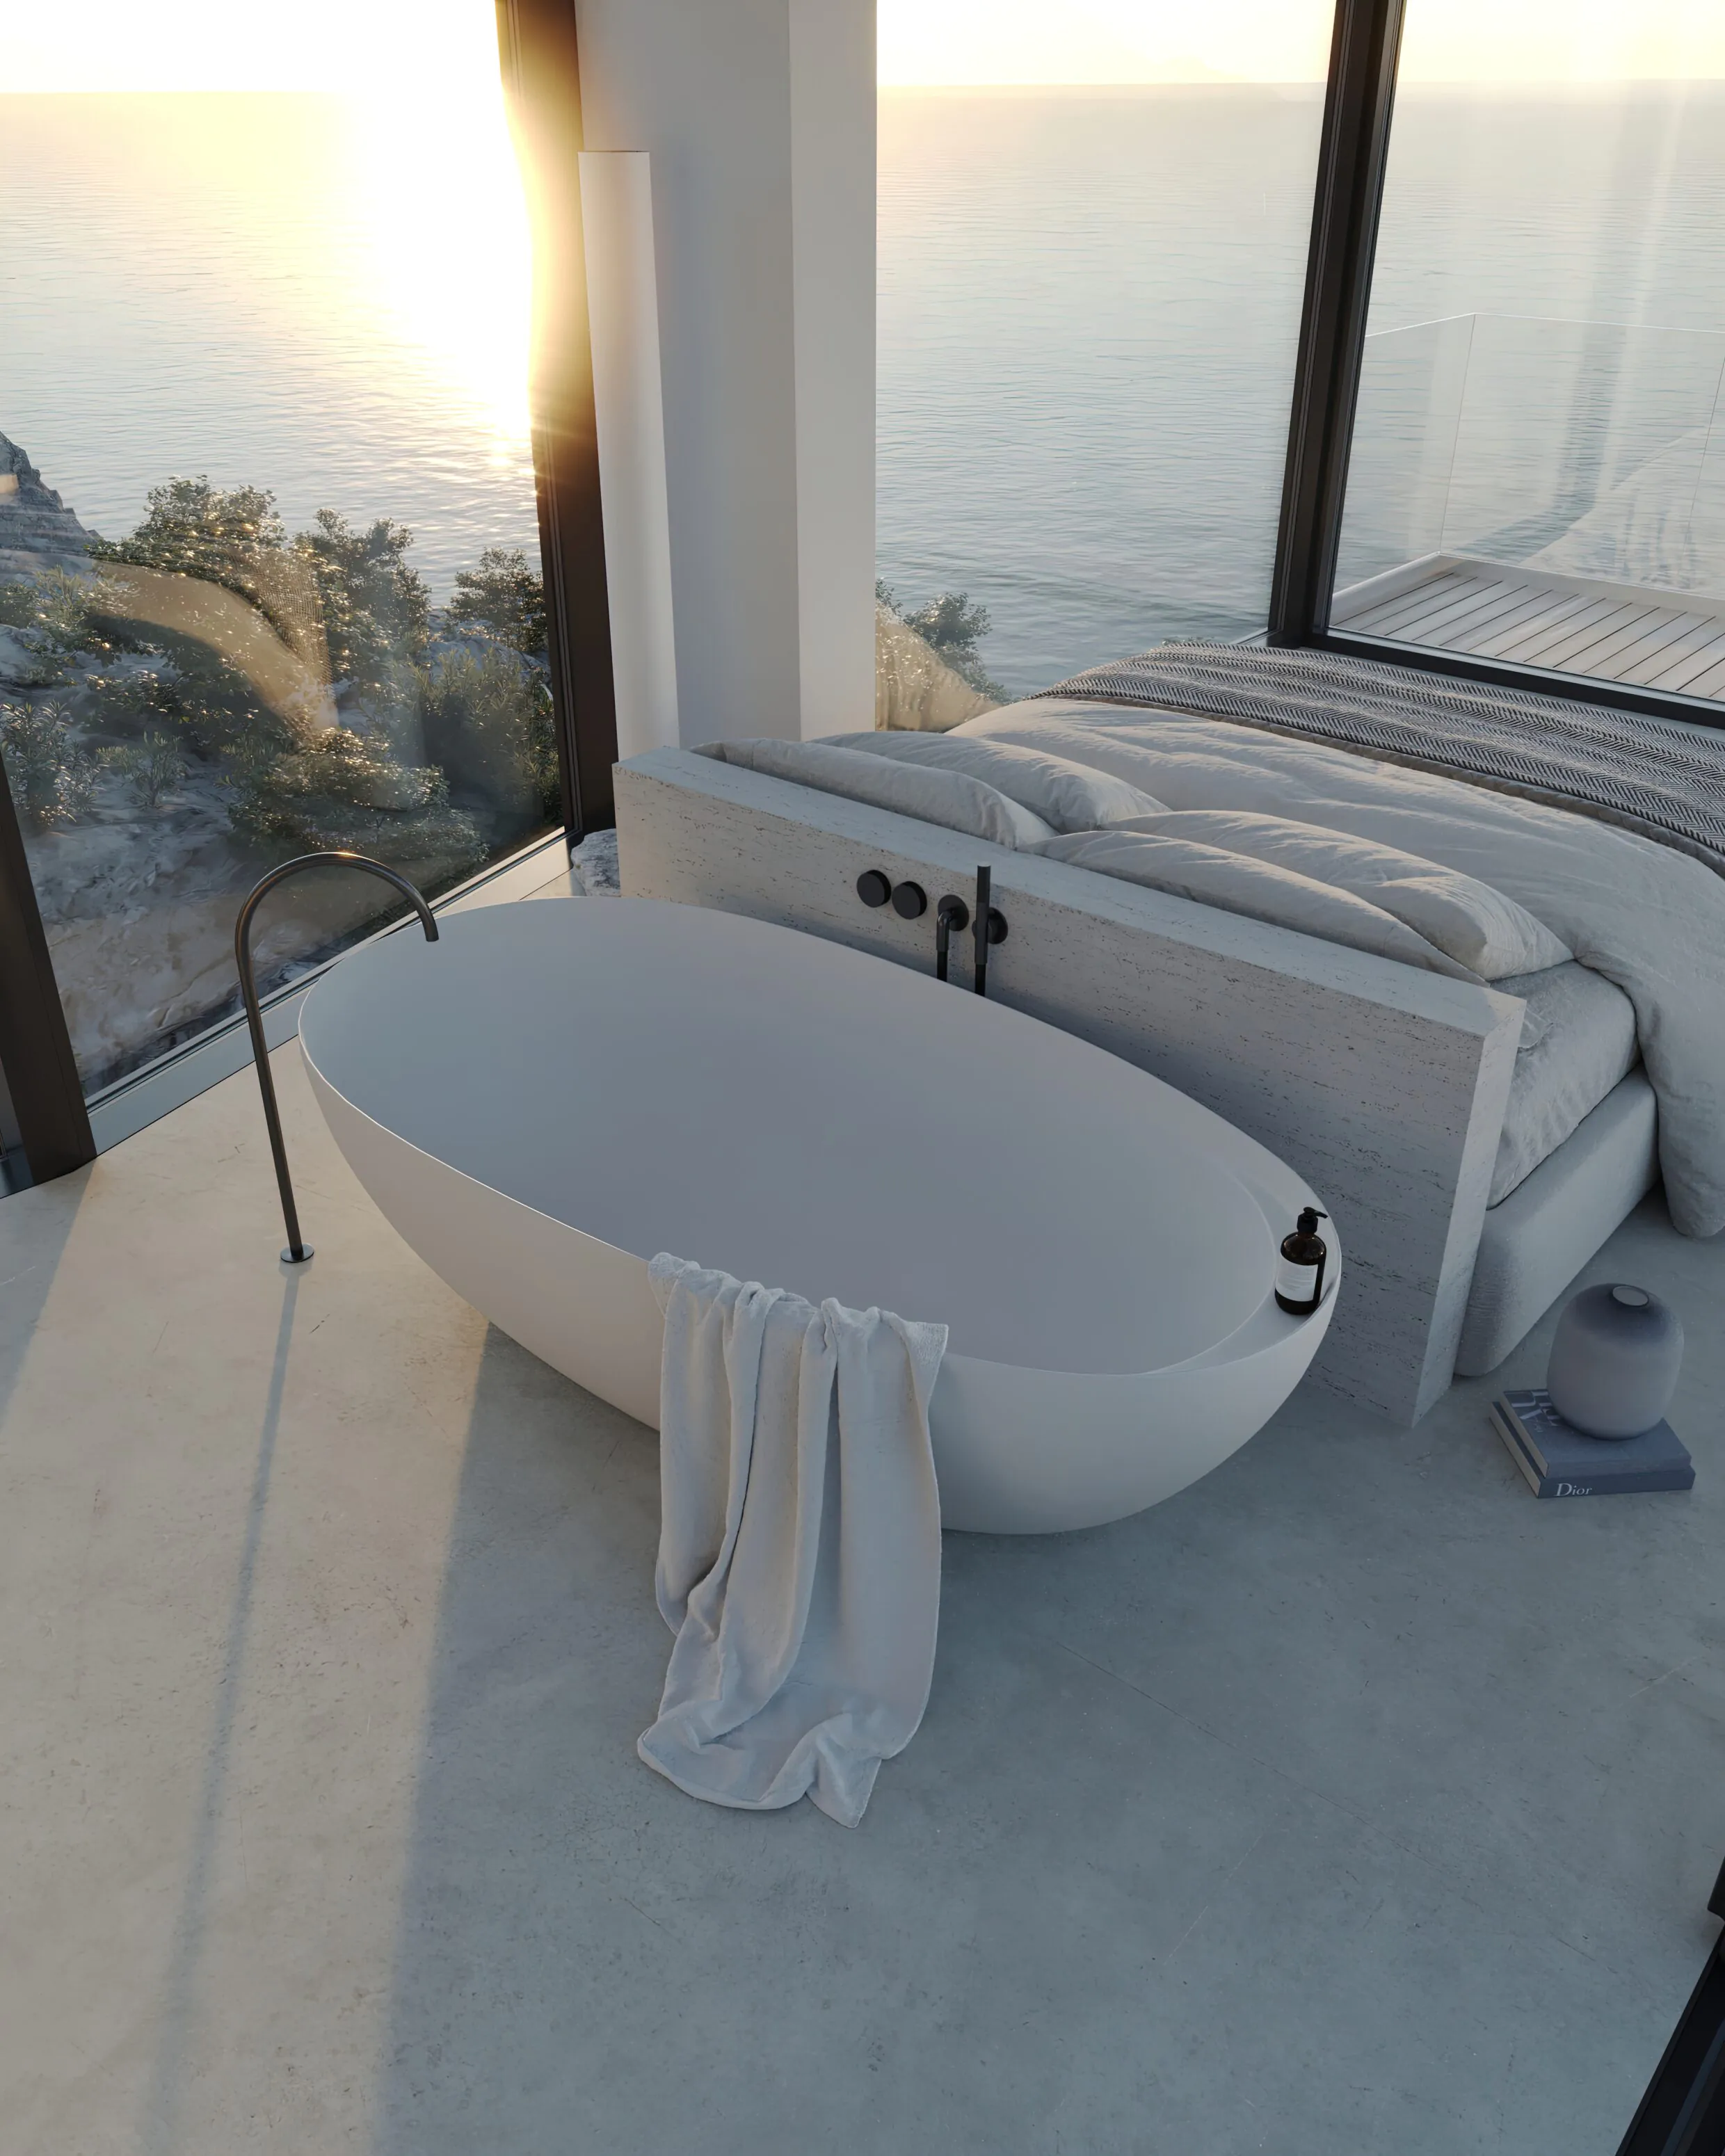 Cote d'Azur Villa вид сверху на ванную